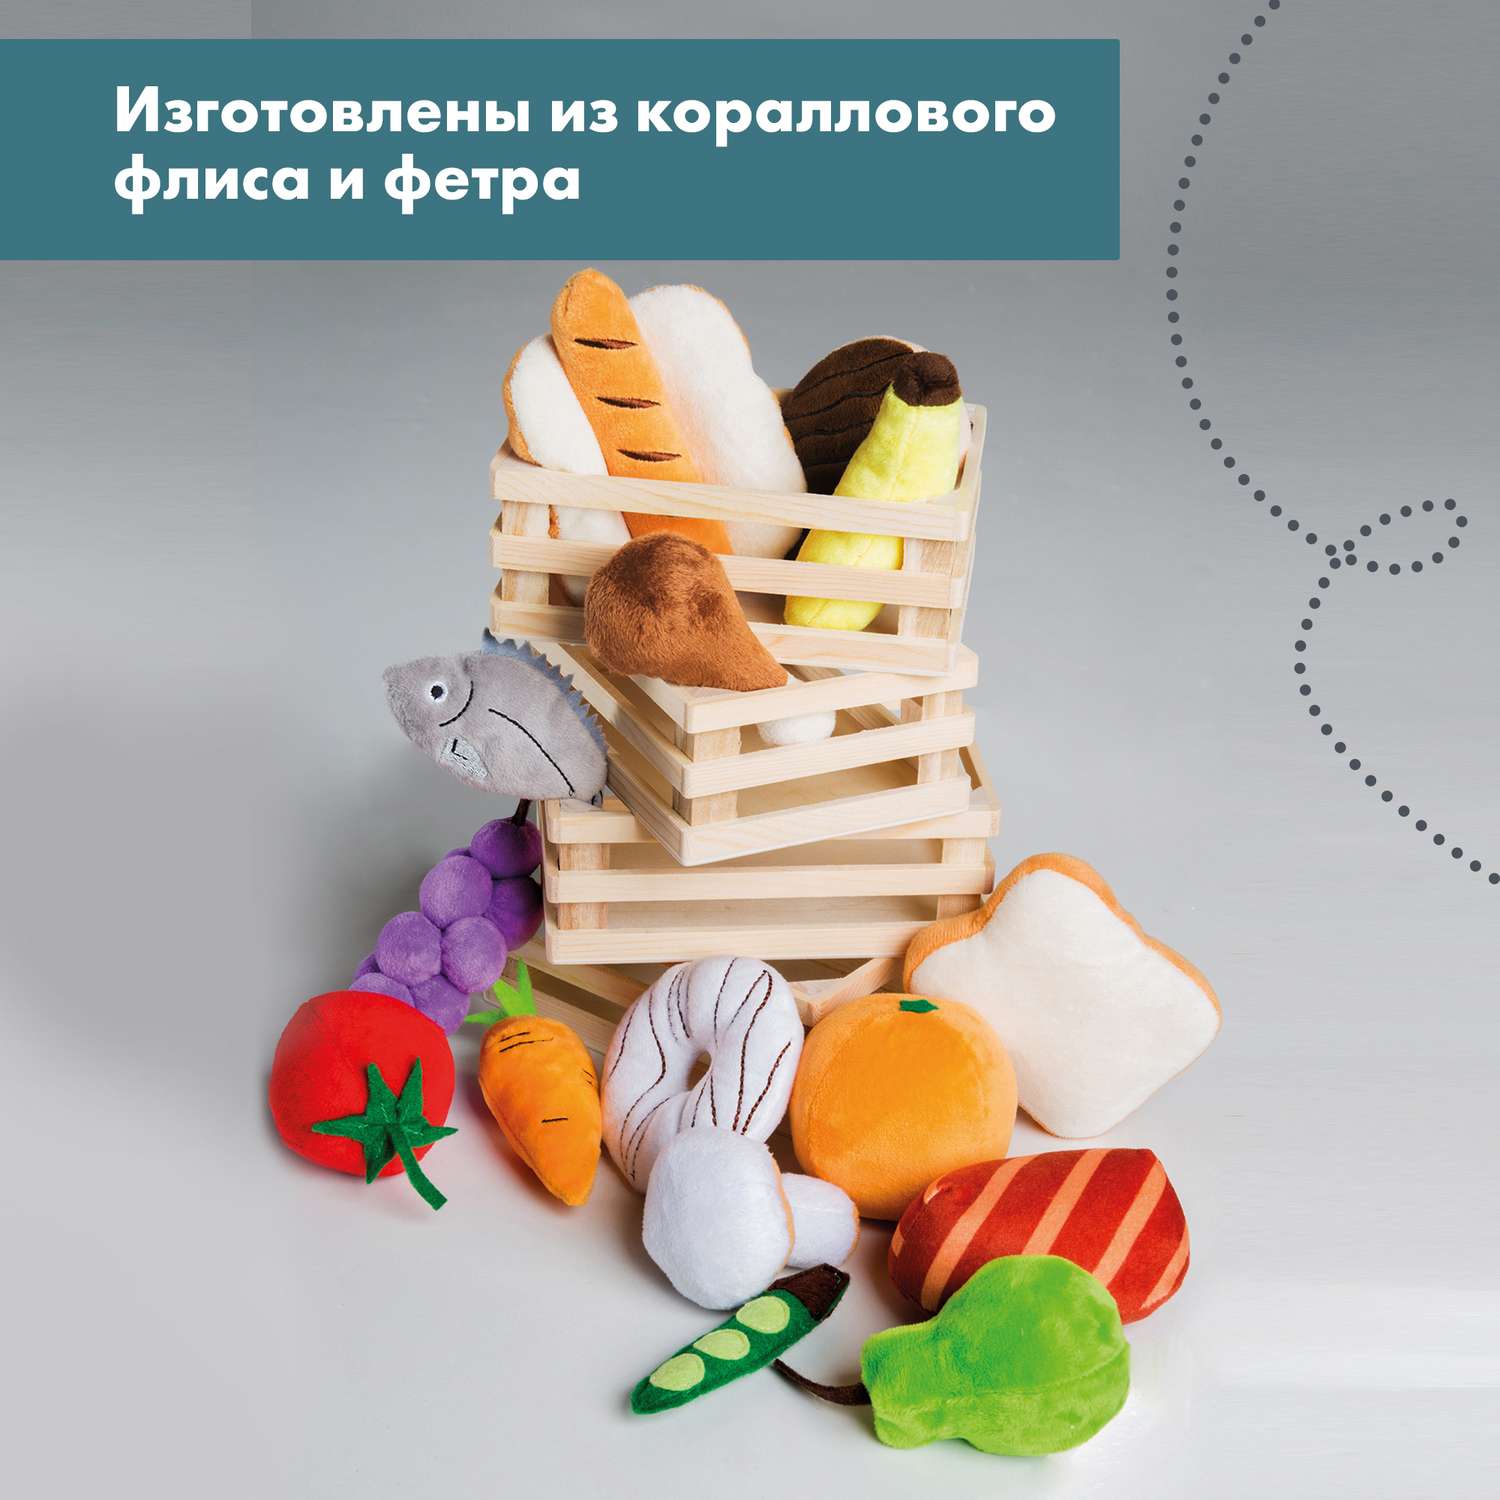 Набор плюшевых продуктов Roba игровой для детского магазина или кухни 98145 - фото 8